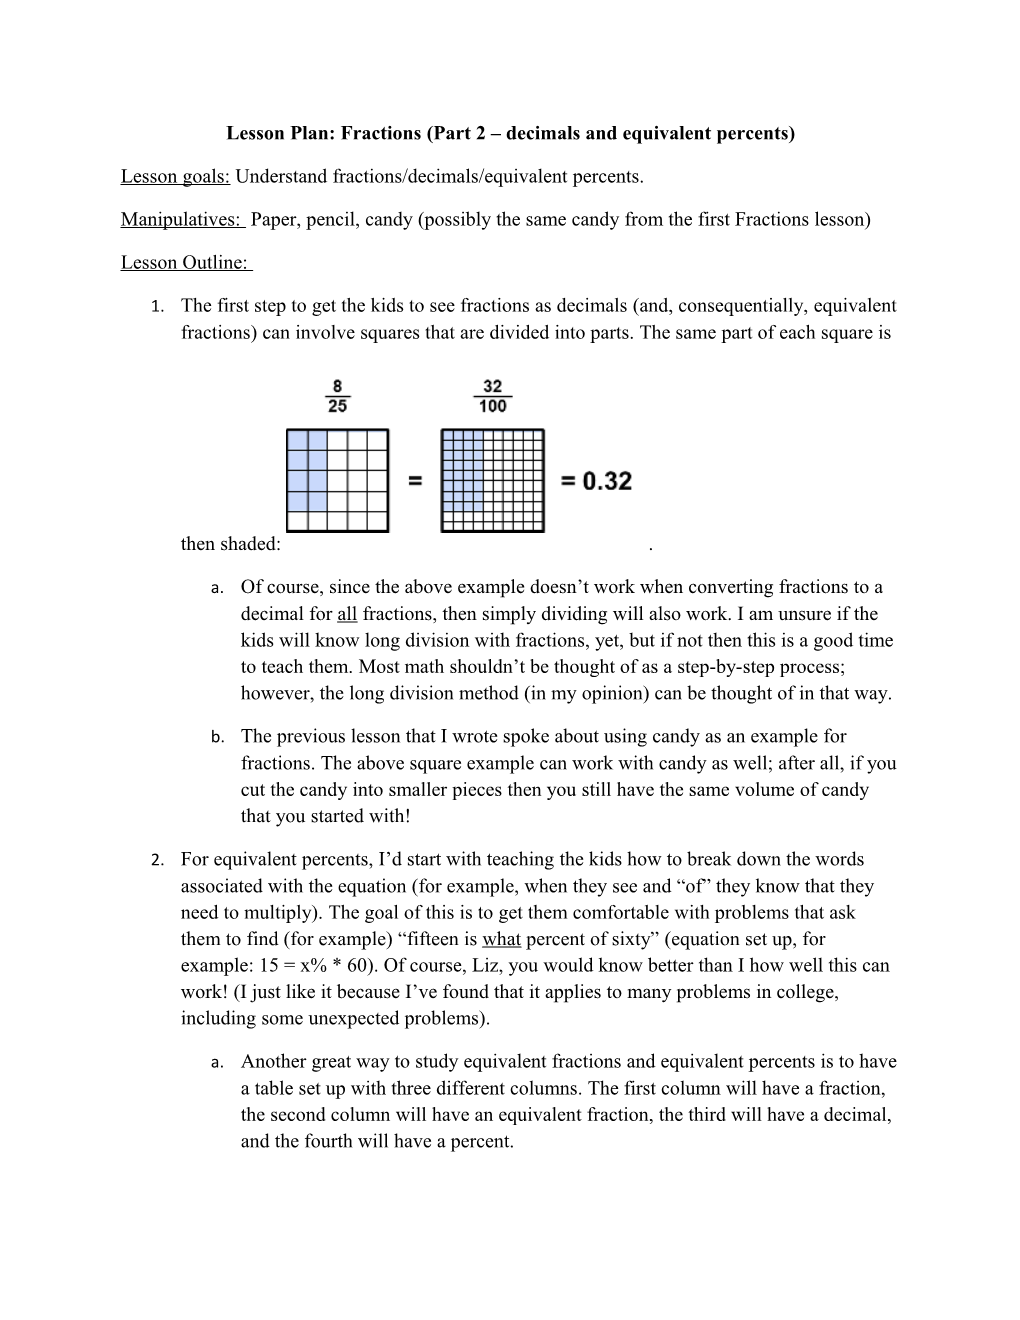 Lesson Plan: Fractions (Part 2 Decimals and Equivalent Percents)